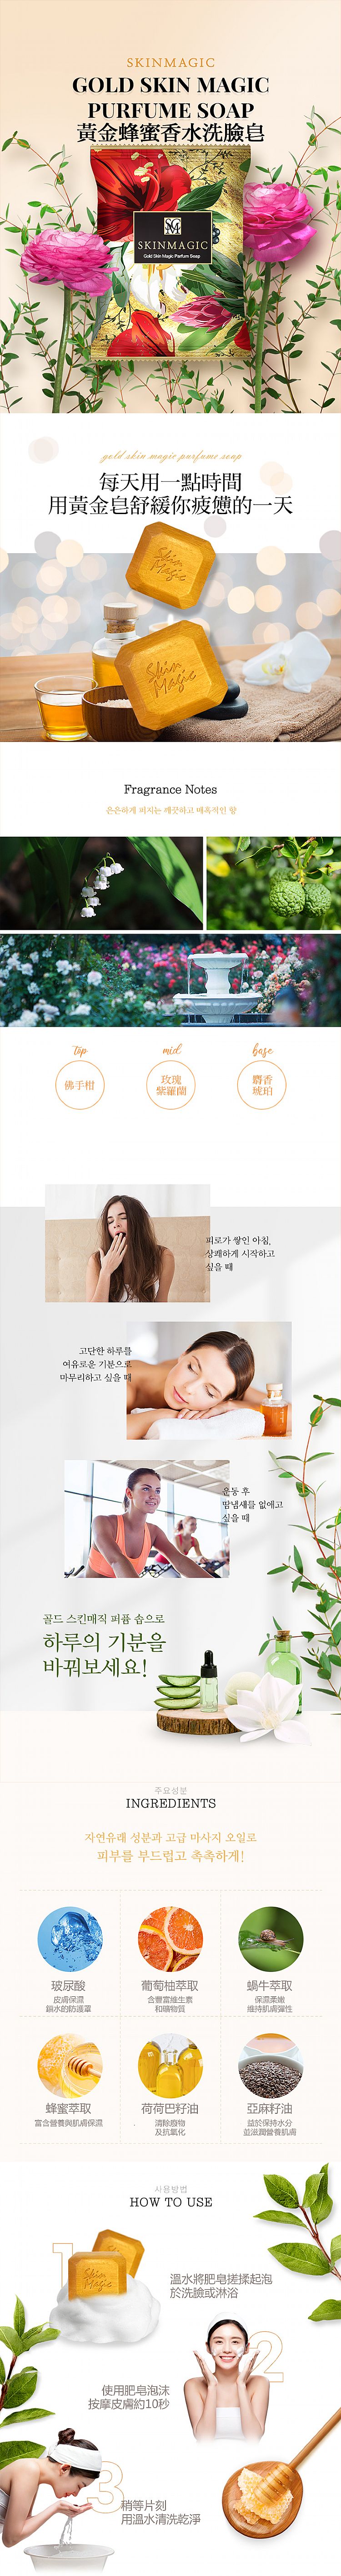 溫和 臉部清潔 溫和 韓國 韓國 臉部清潔